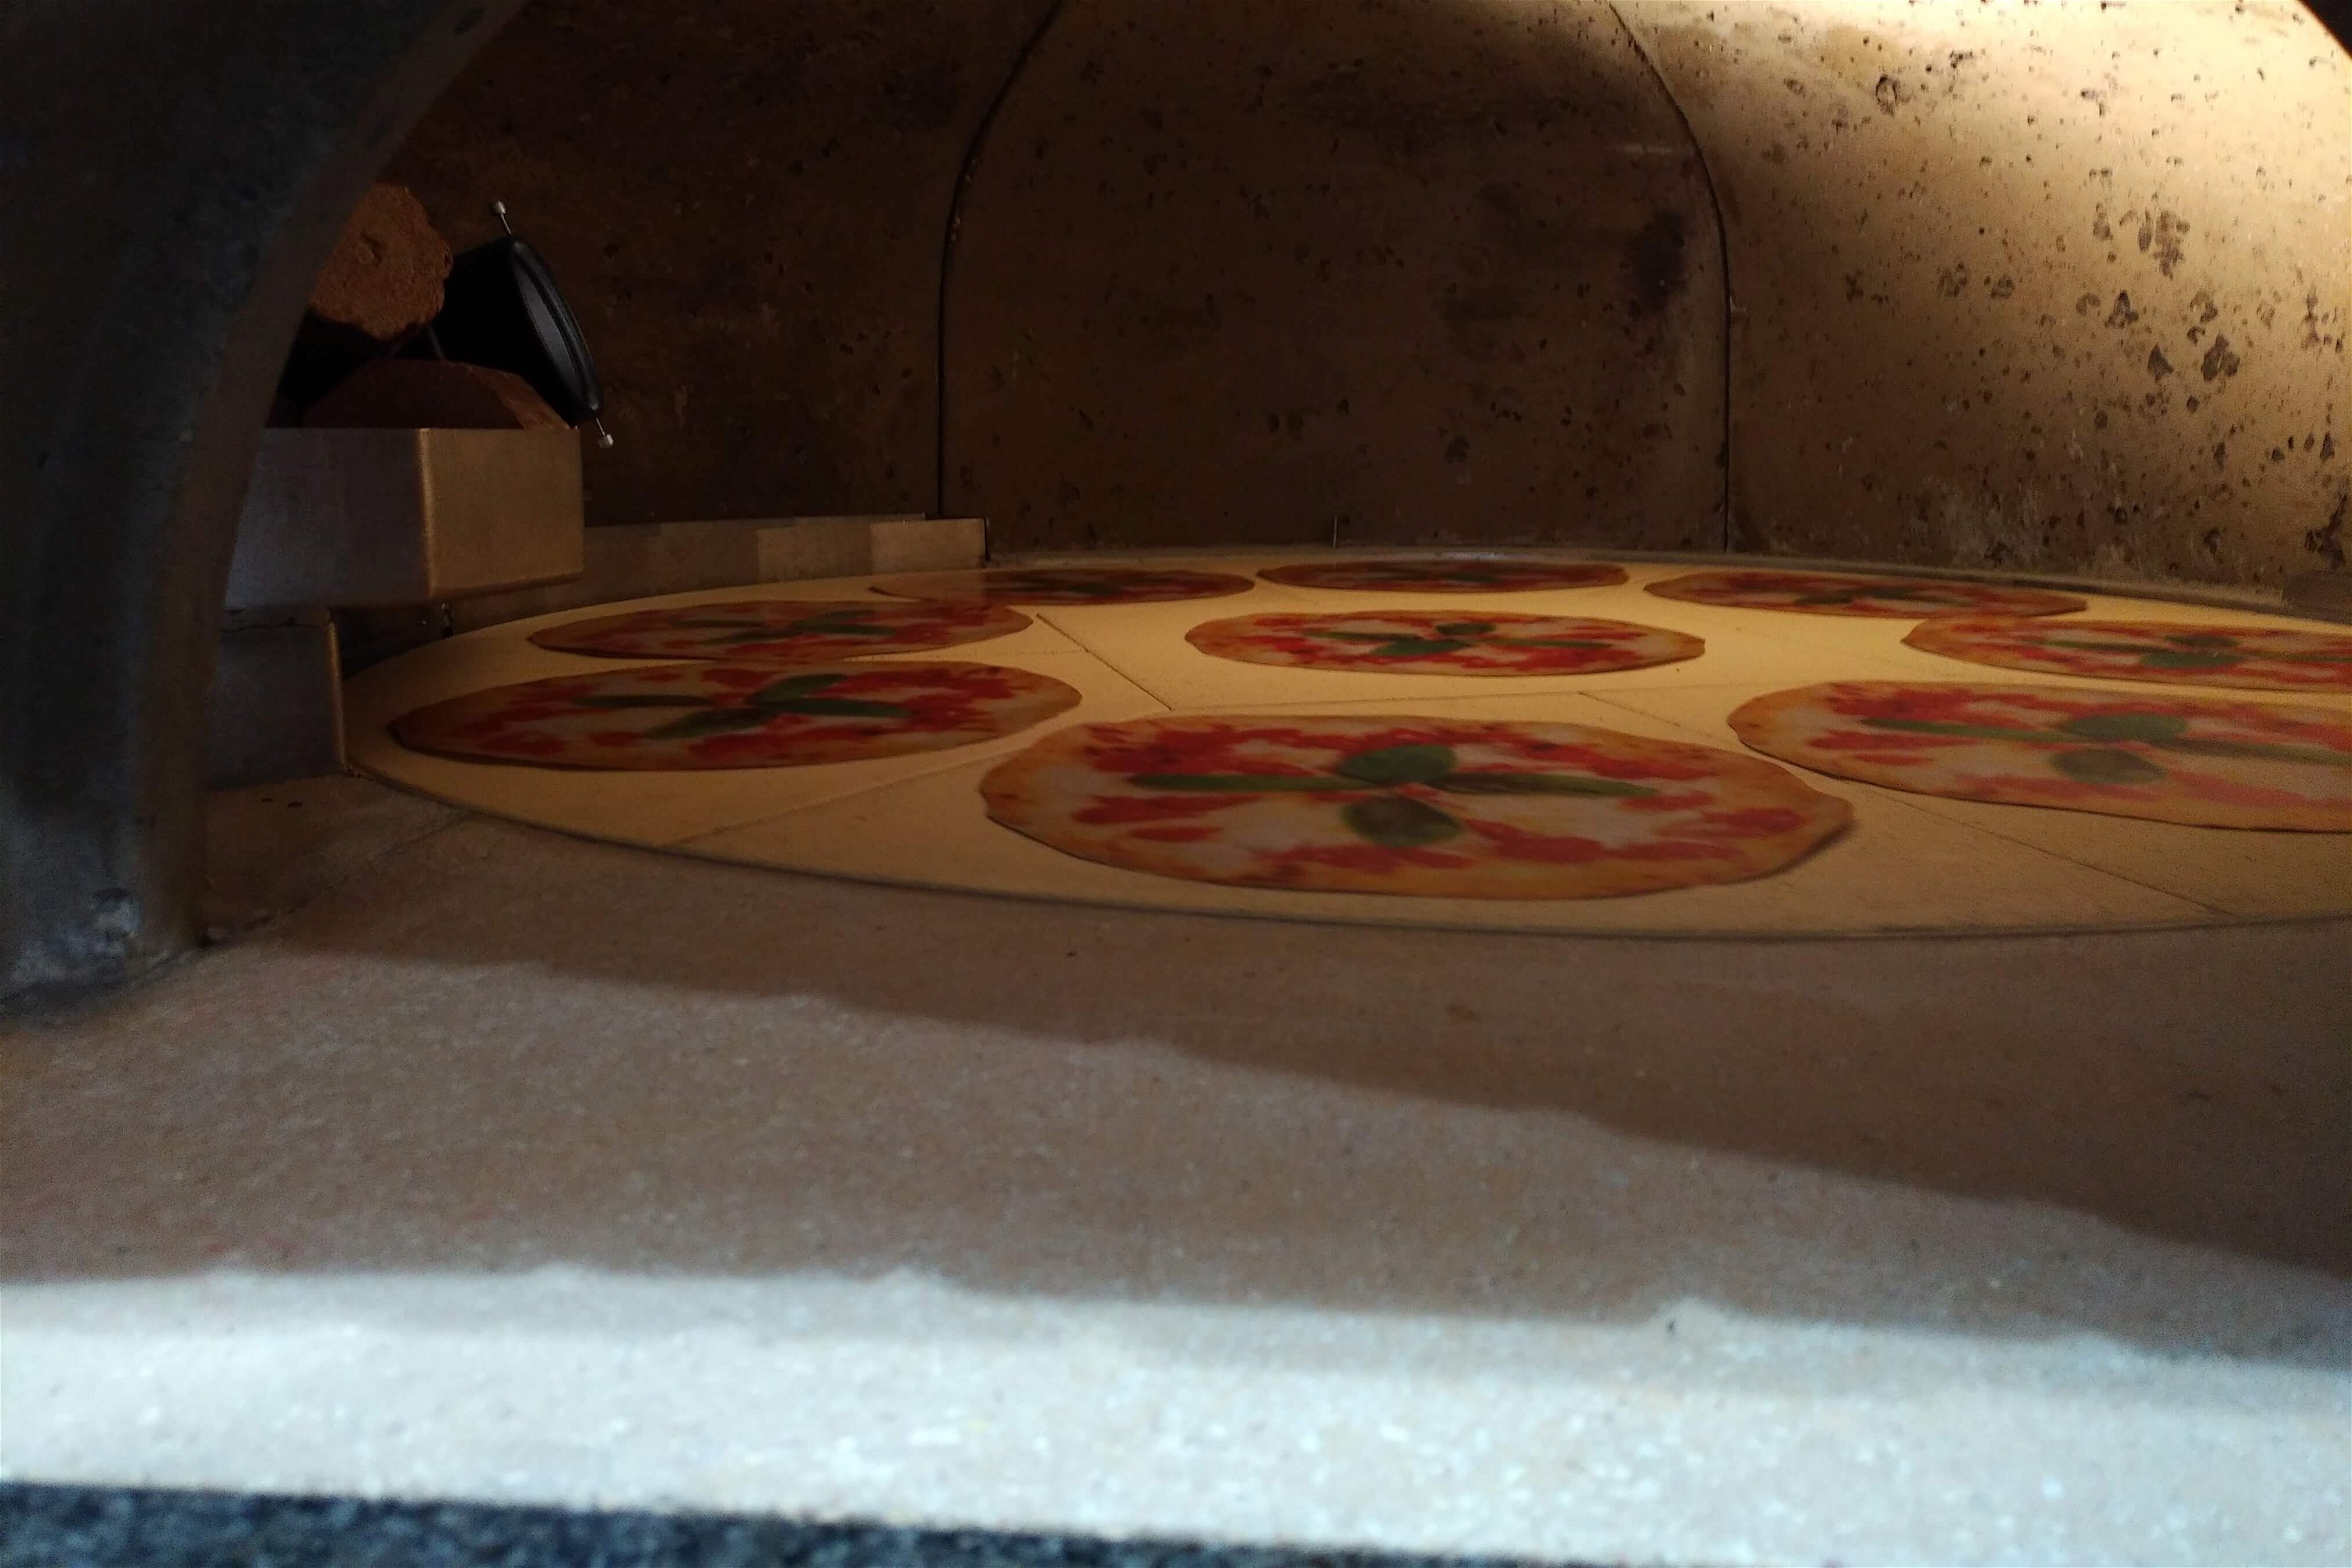 Holzbackofen Valoriani Rotativo: rotierender Pizzaofen, quadratisch, 130cm Durchmesser, für Gastro